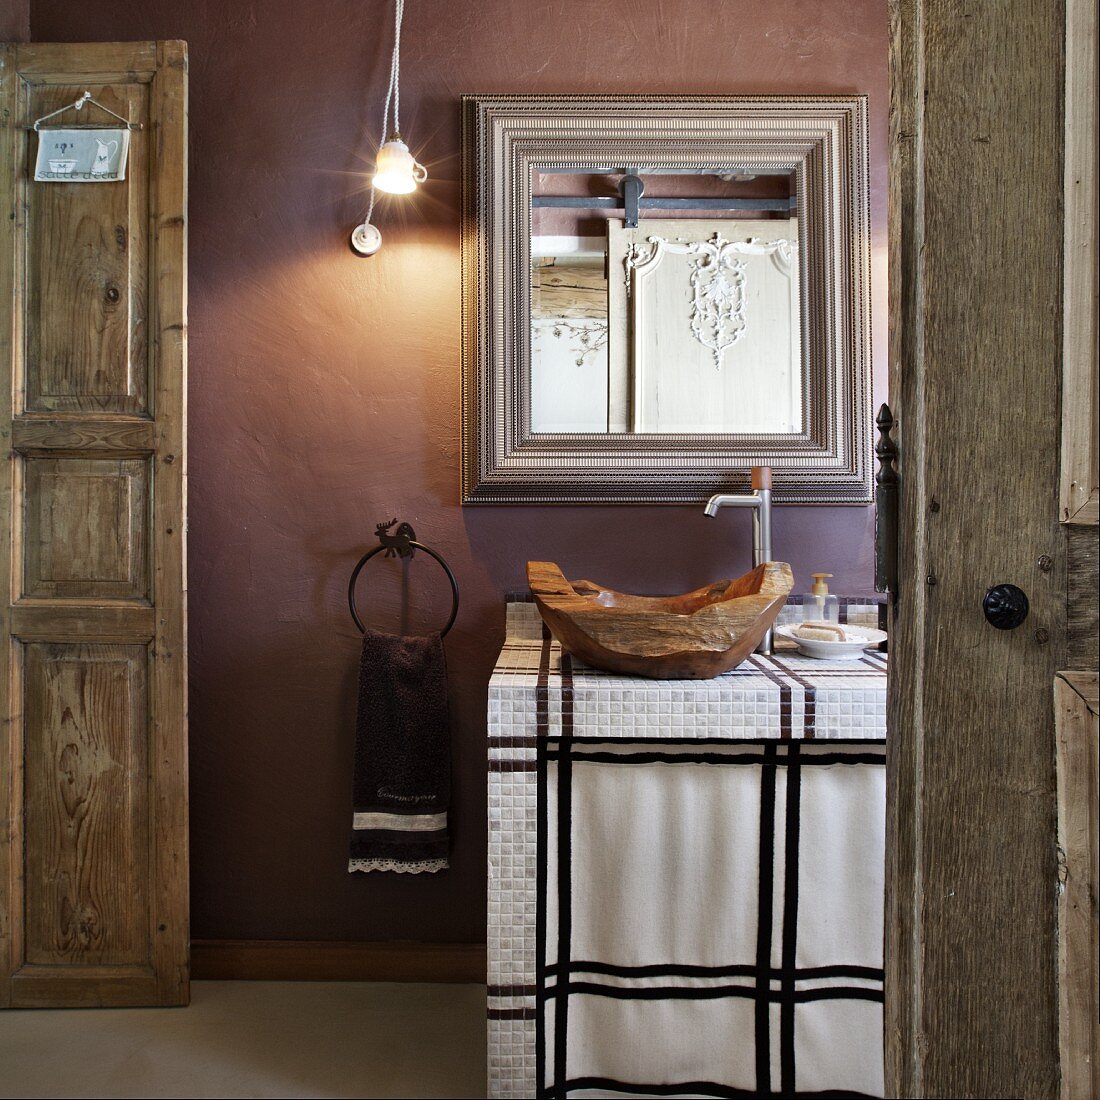 Einblick in ein rustikales Bad - Holzschale als Waschbecken auf gefliestem Waschtisch vor Spiegel an mauvefarbener Wand